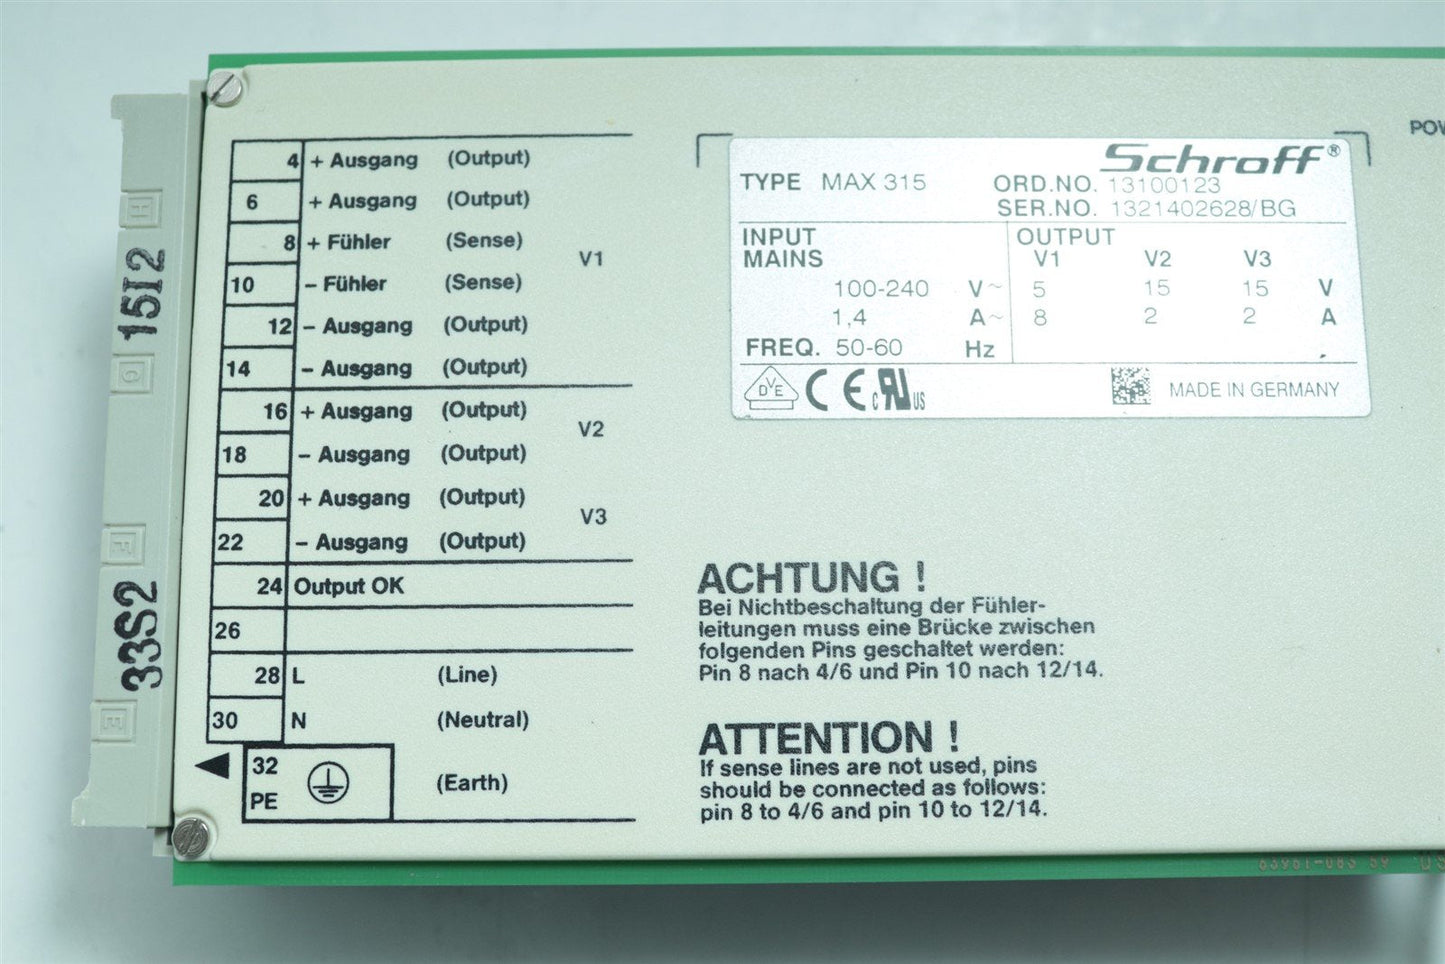 Schroff MAX 315 13100123 100-240V 1.4A 50-60Hz